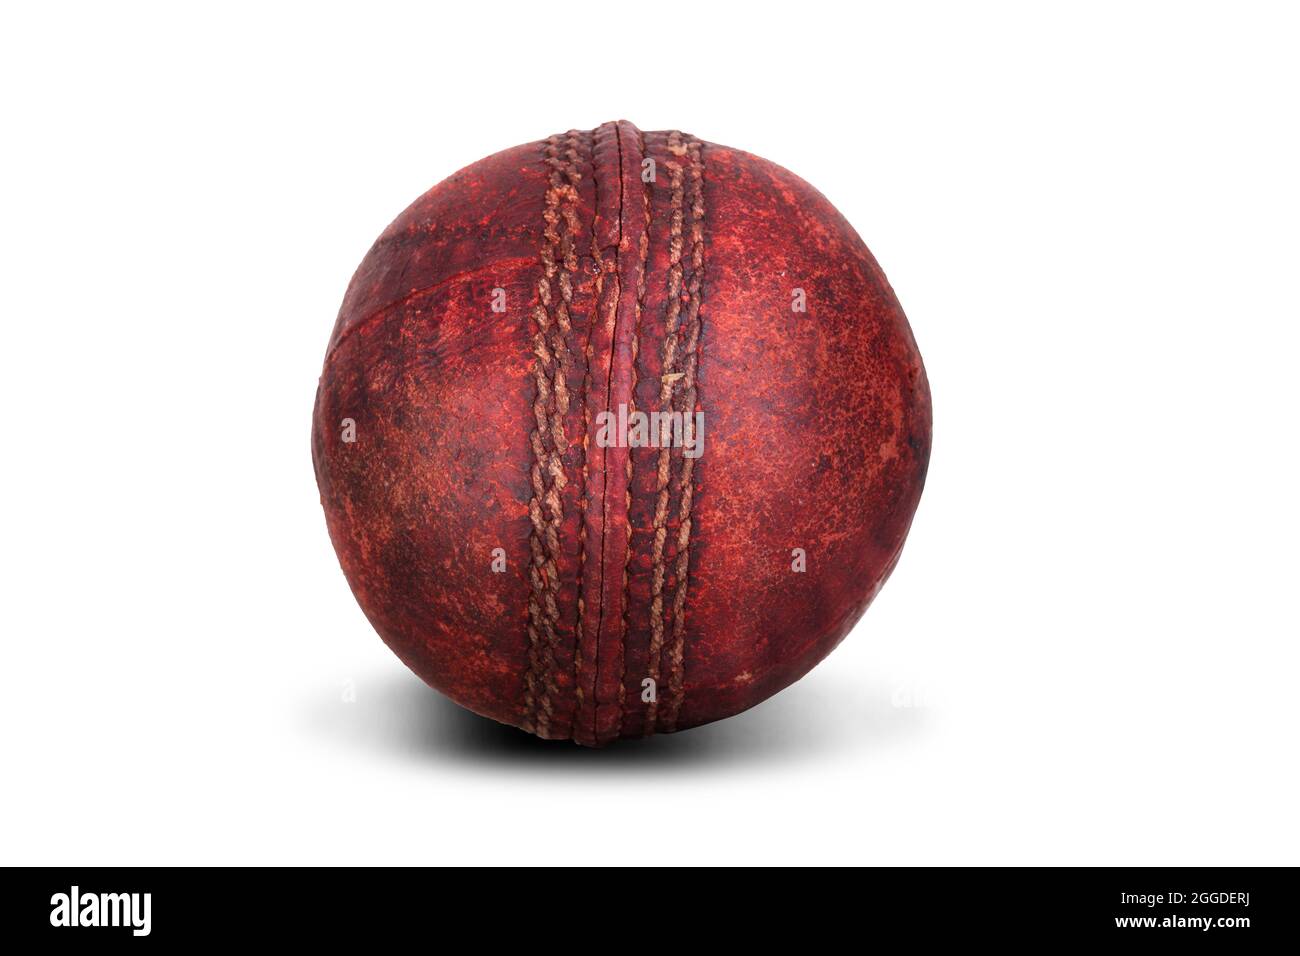 Piel de bola de cricket roja vieja con pespuntes aislados sobre un fondo blanco. Equipo deportivo desgastado Foto de stock